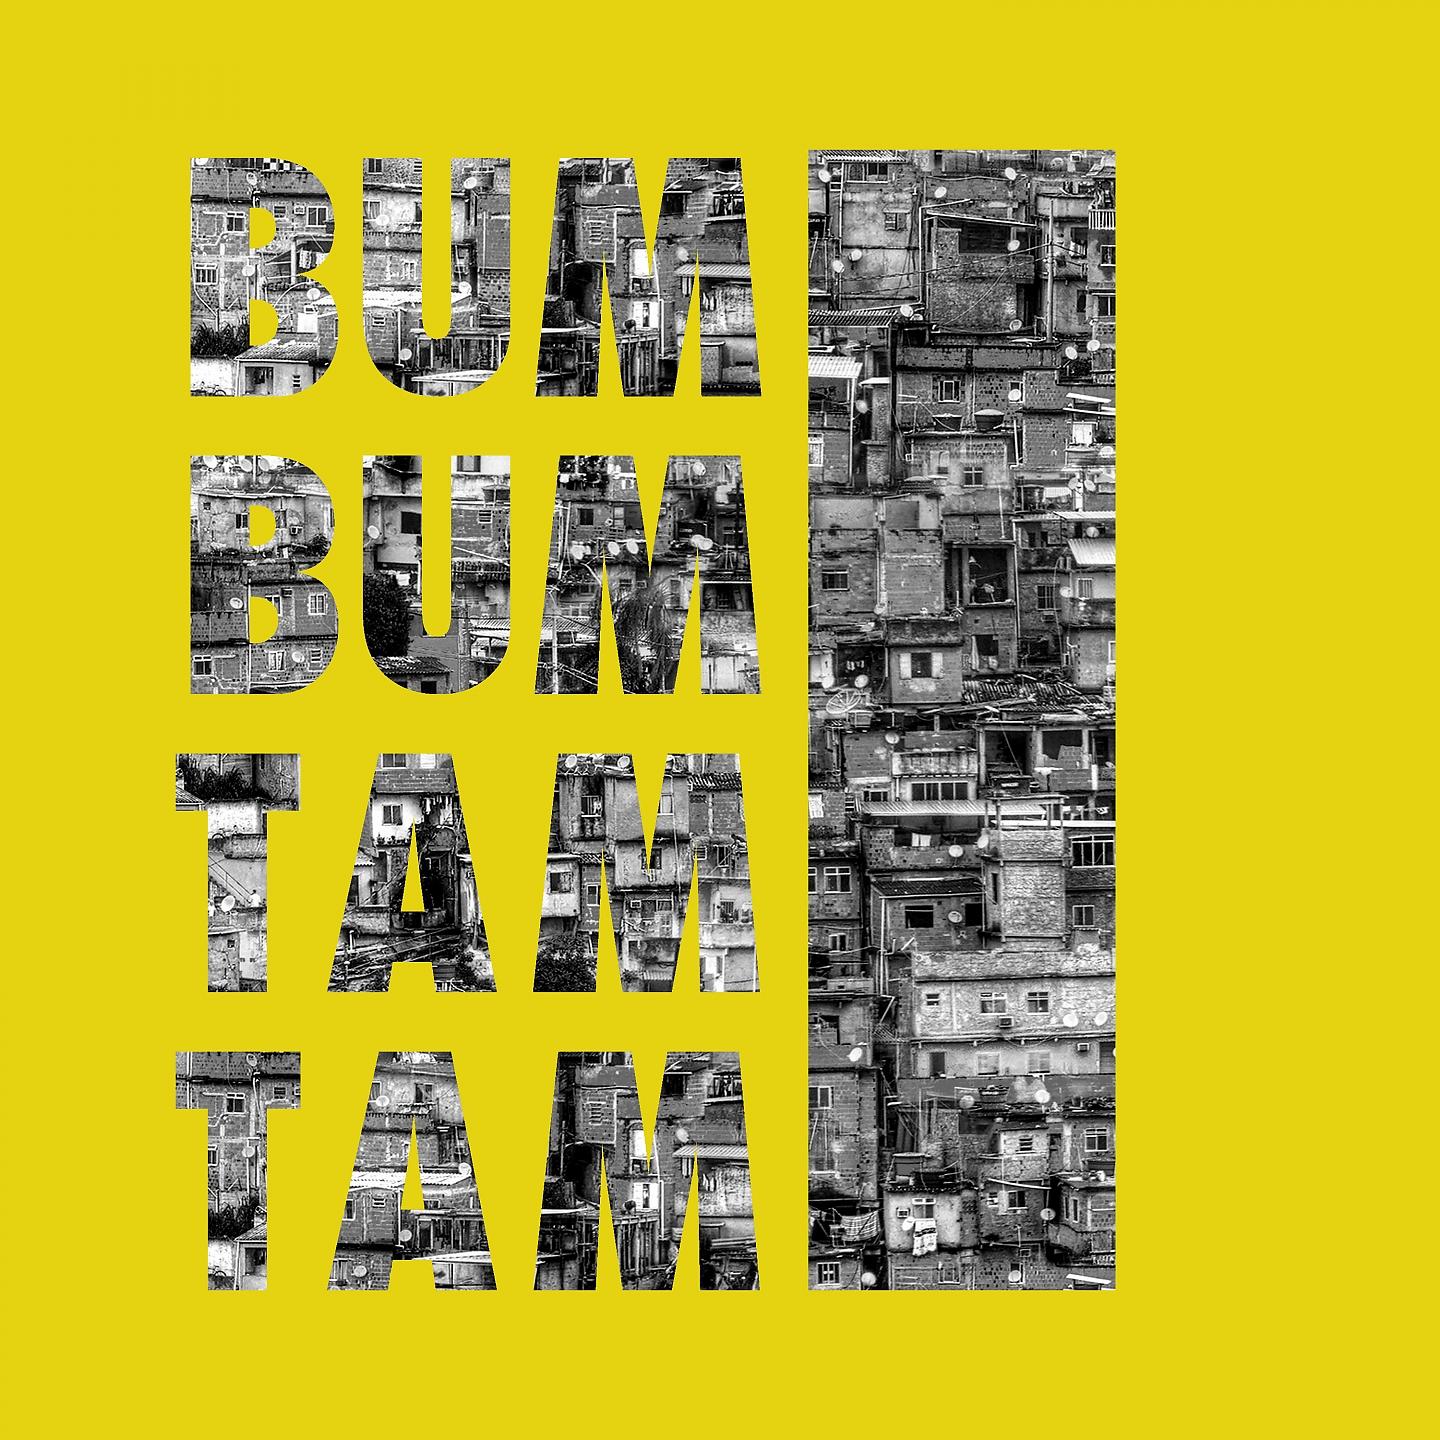 Постер альбома Bum Bum Tam Tam